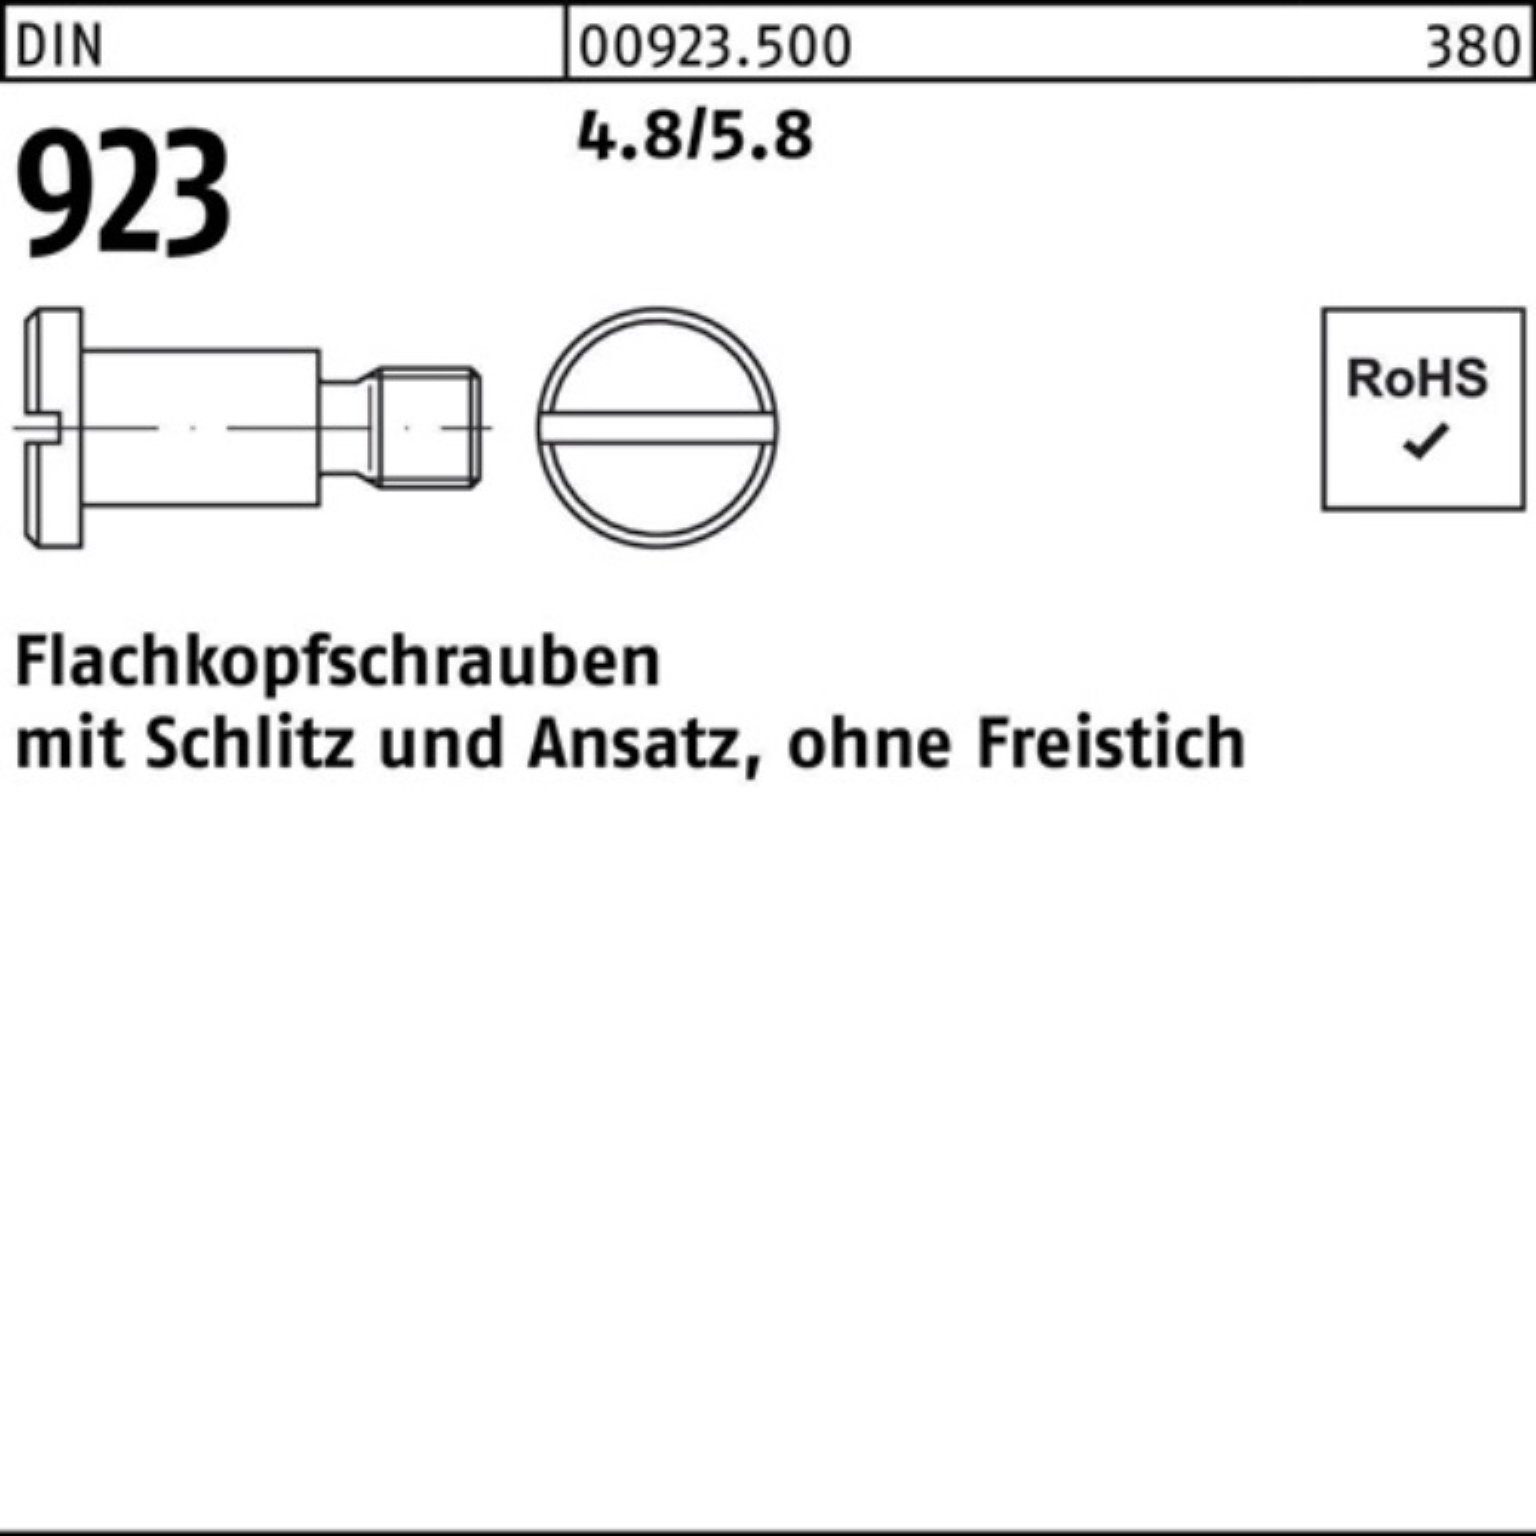 Reyher Schraube 100er Pack Flachkopfschraube DIN 923 Schlitz/Ansatz M4x12x 6,0 4.8/5.8